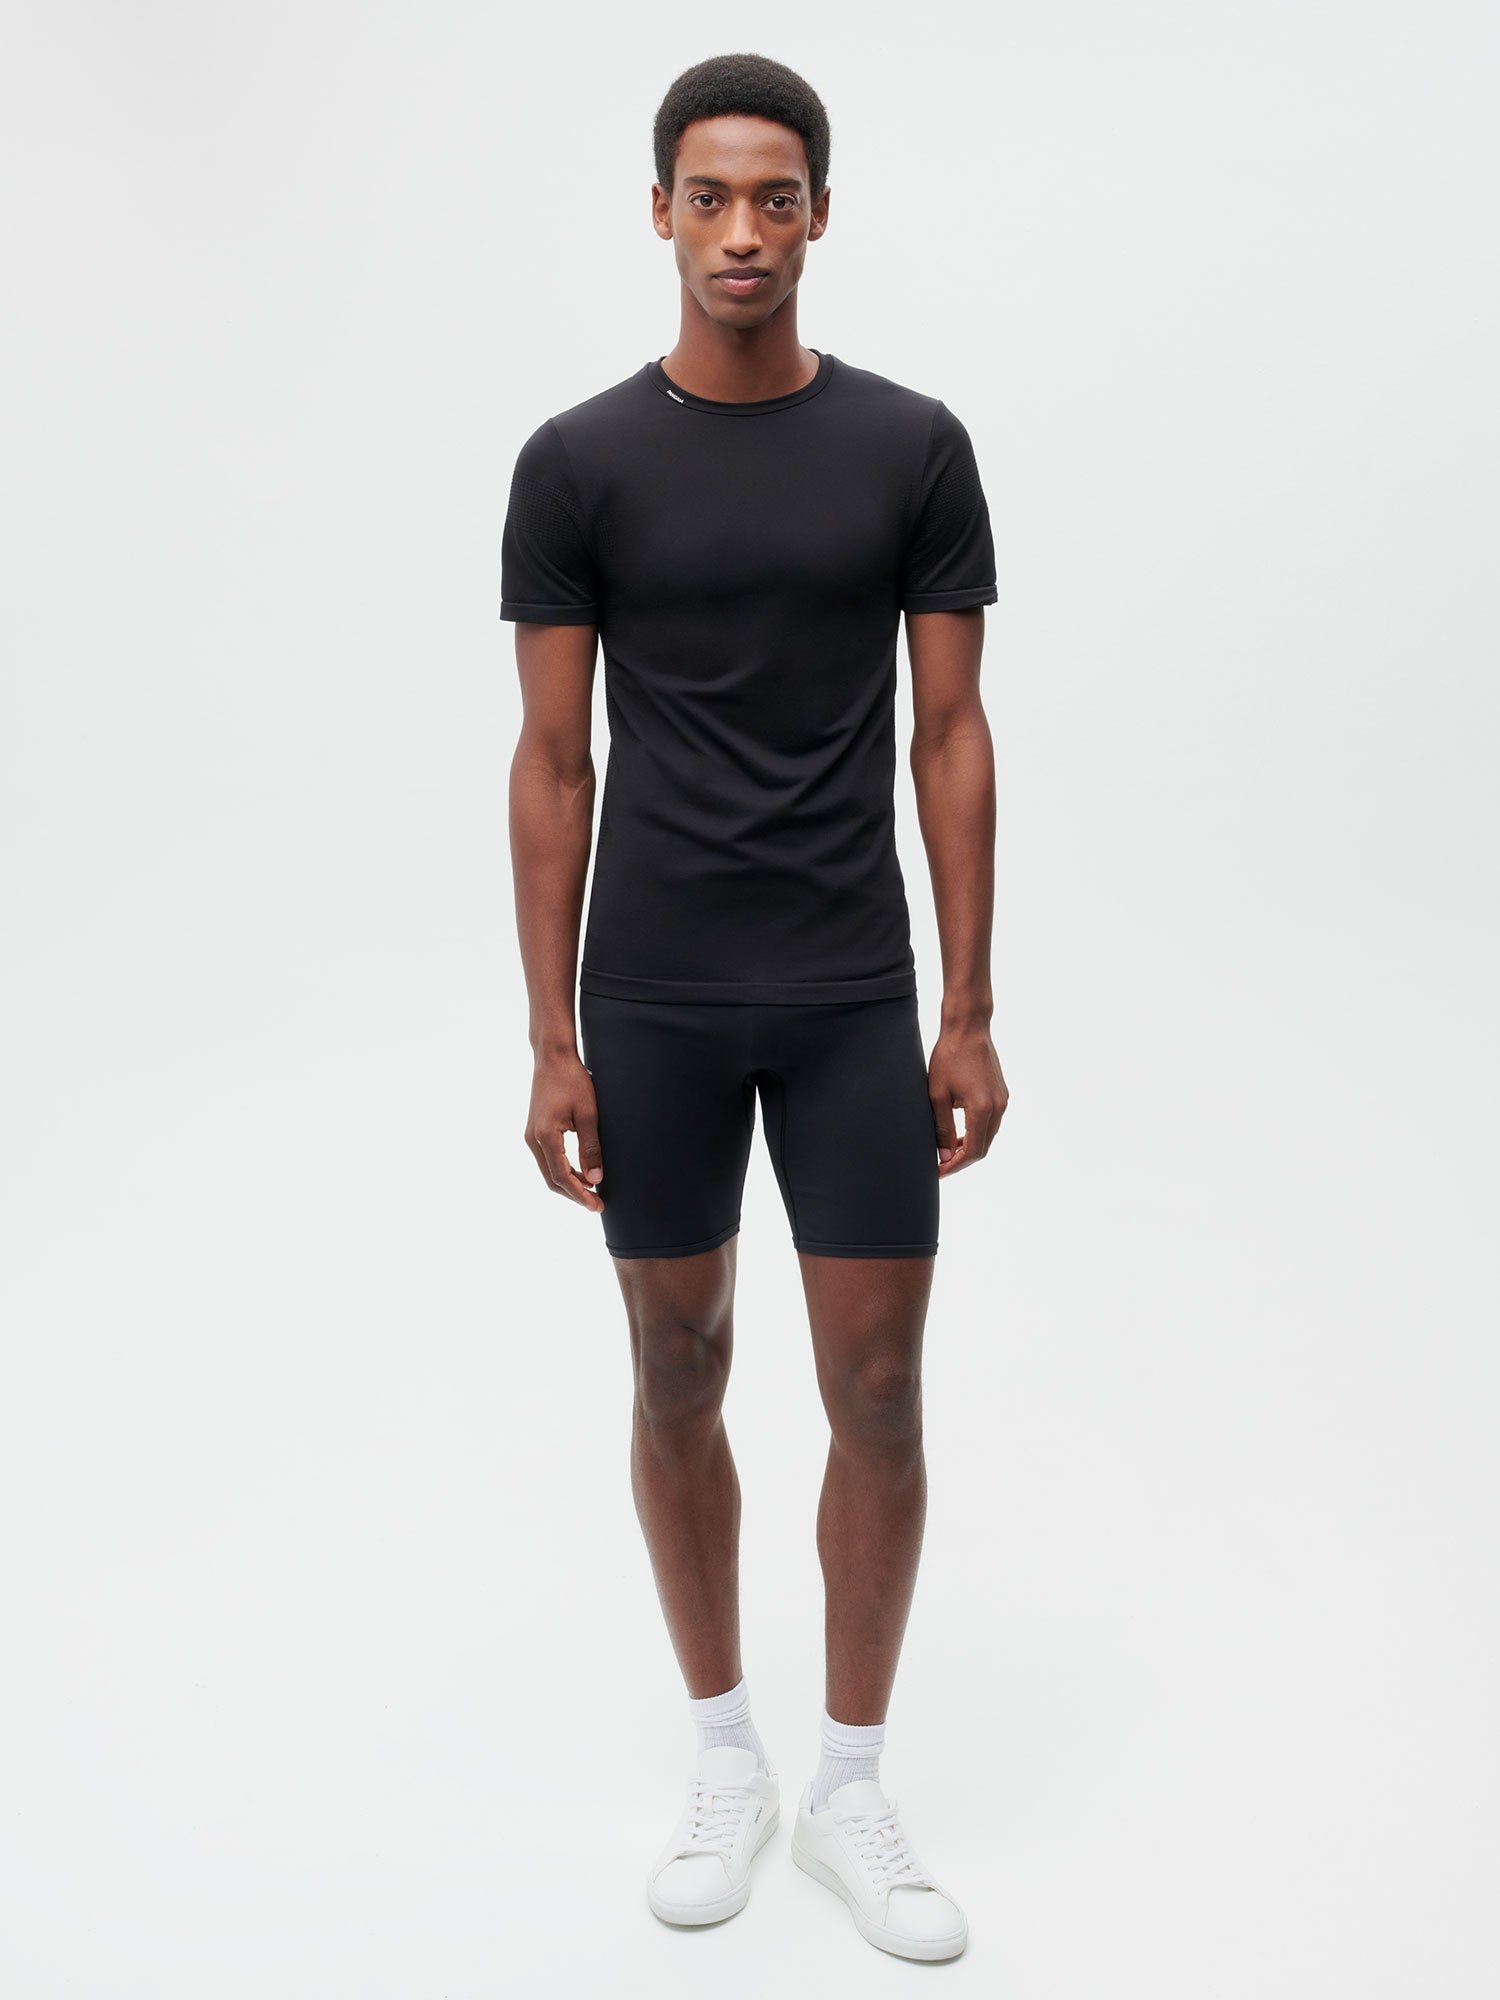 Activewear Mens Shorts Black 